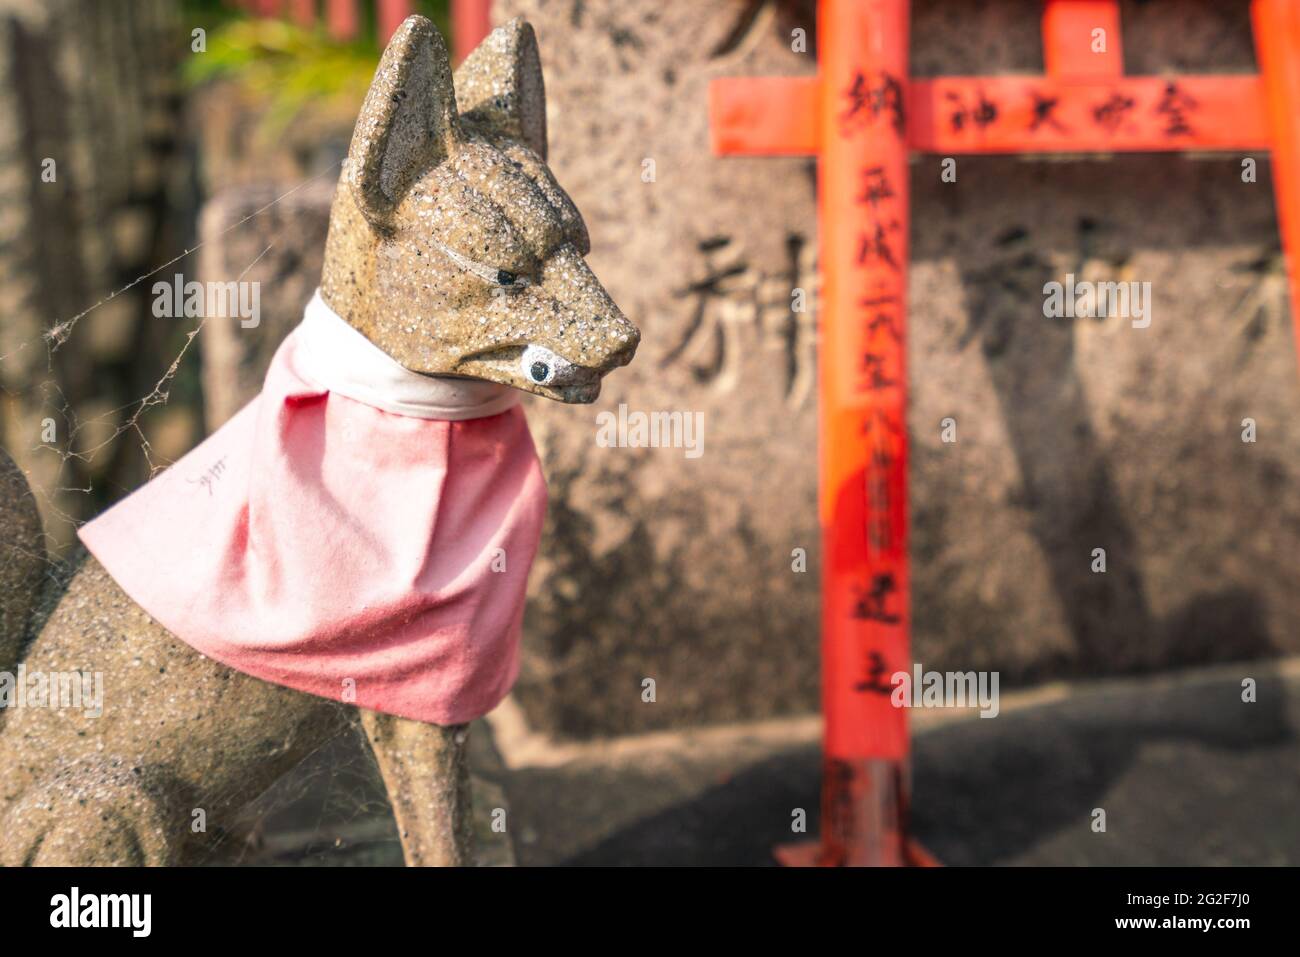 Kyoto, Japan - 05.19.2019: Eine steinerne Statue eines Hundes mit Augapfel im Mund und einem rosa Halstuch auf einem Grabstein auf einem Friedhof in Kyoto Stockfoto